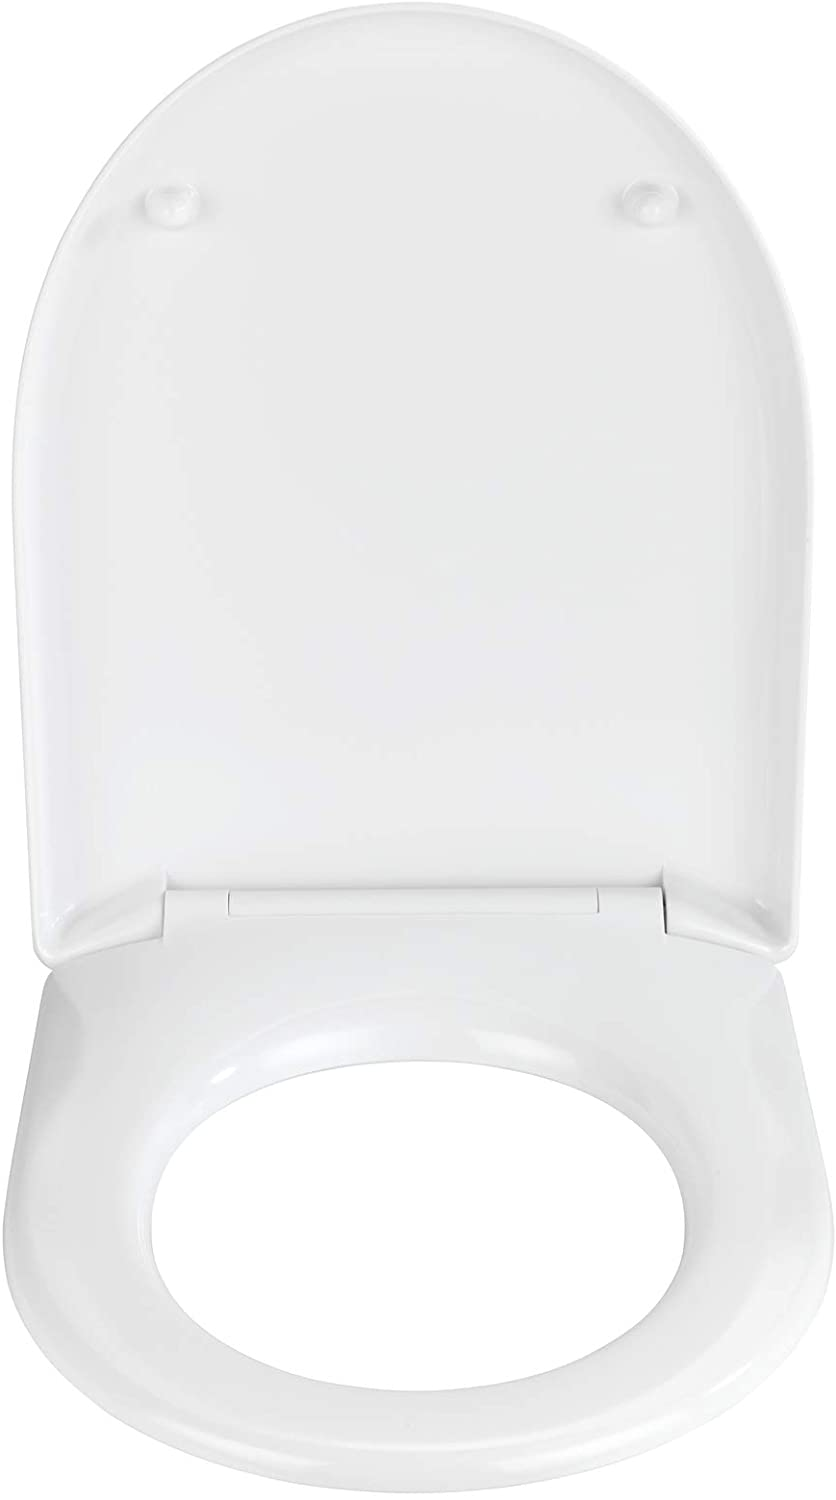 WC-Sitz Exclusive Nr. 7 - Antibakterieller Toiletten-Sitz mit Absenkautomatik, Duroplast, 36.5 x 45.5 cm, Weiß